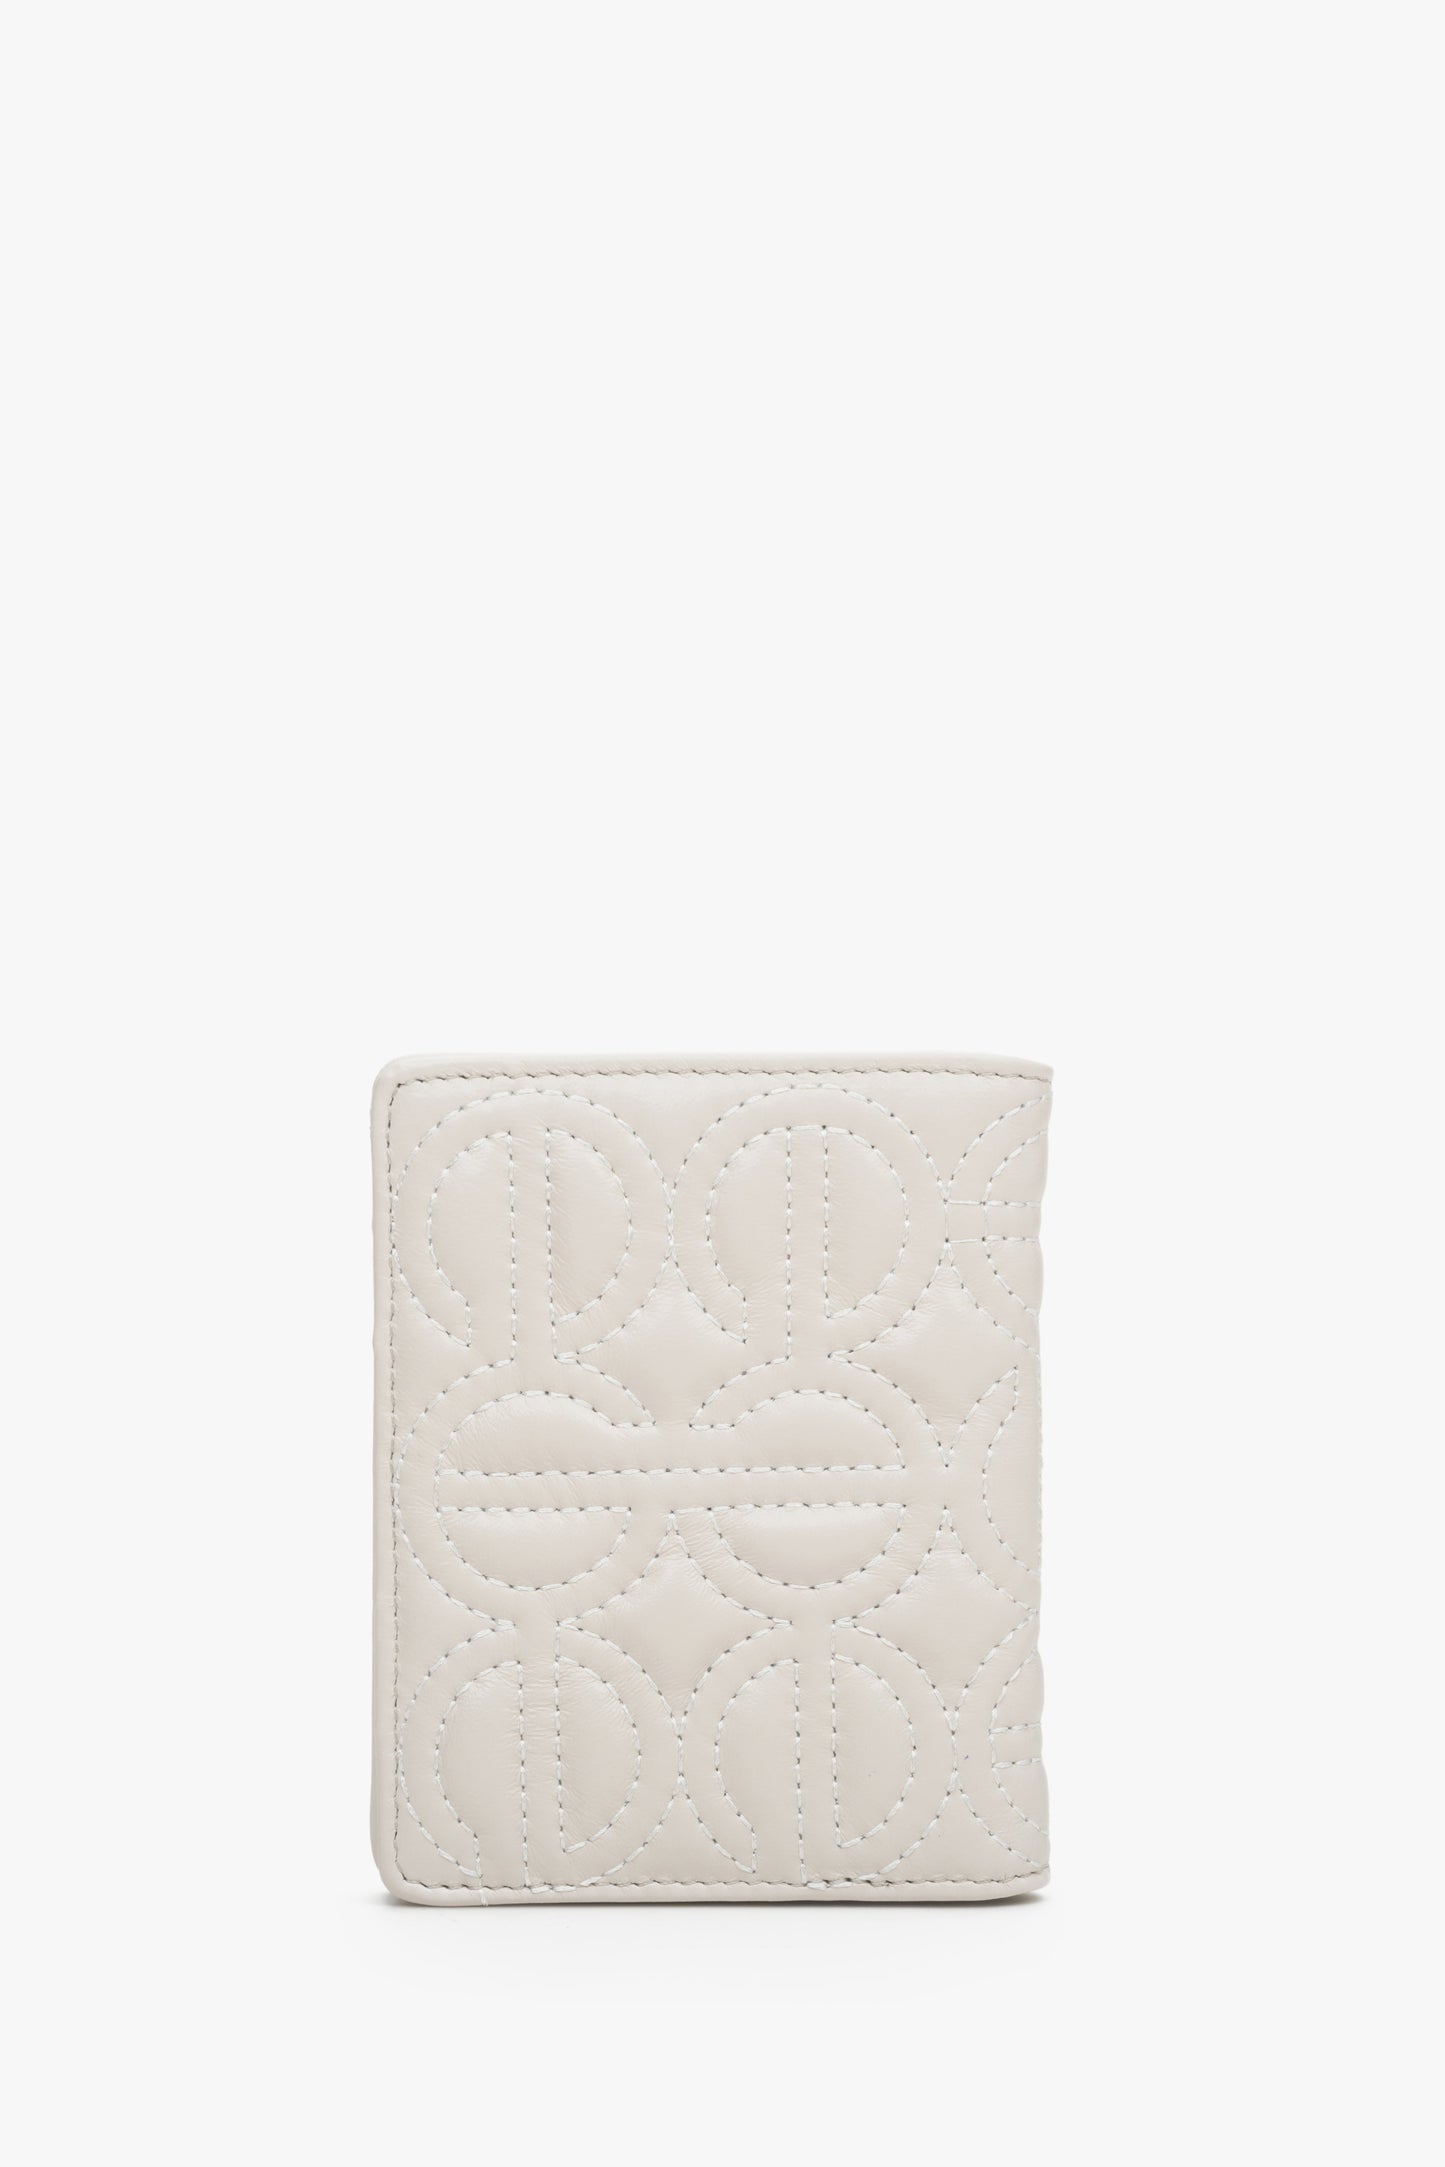 Skórzany, mały portfel damski w kolorze jasnobeżowym marki Estro z tłoczonym logo.